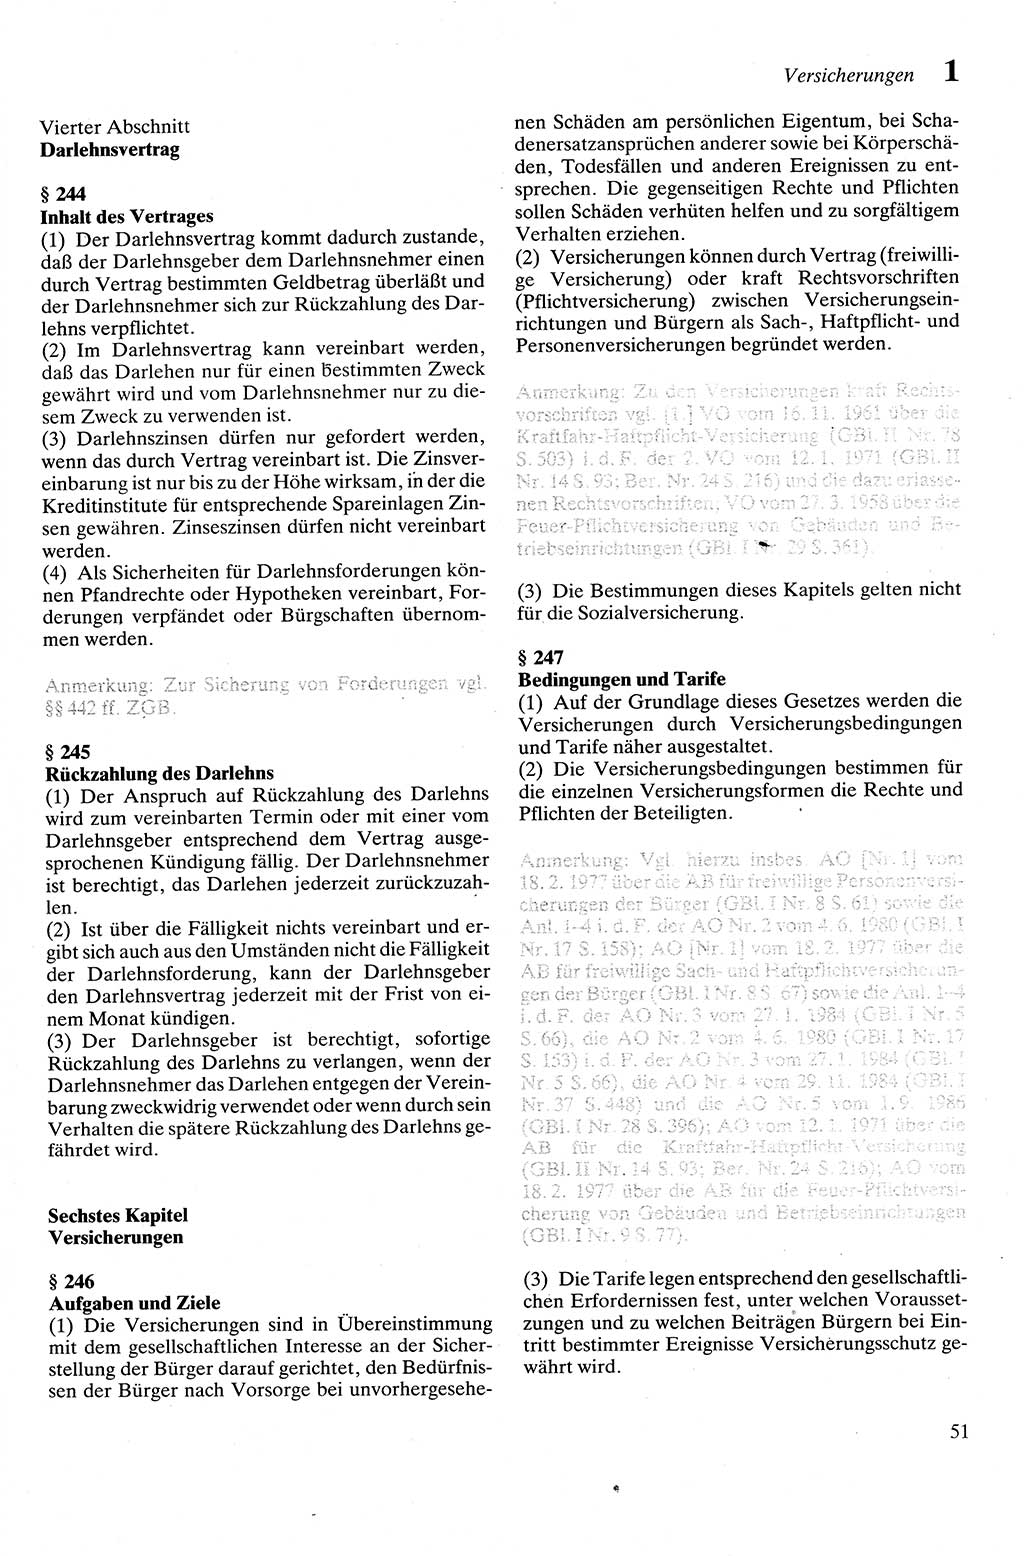 Zivilgesetzbuch (ZVG) sowie angrenzende Gesetze und Bestimmungen [Deutsche Demokratische Republik (DDR)] 1975, Seite 51 (ZGB Ges. Best. DDR 1975, S. 51)